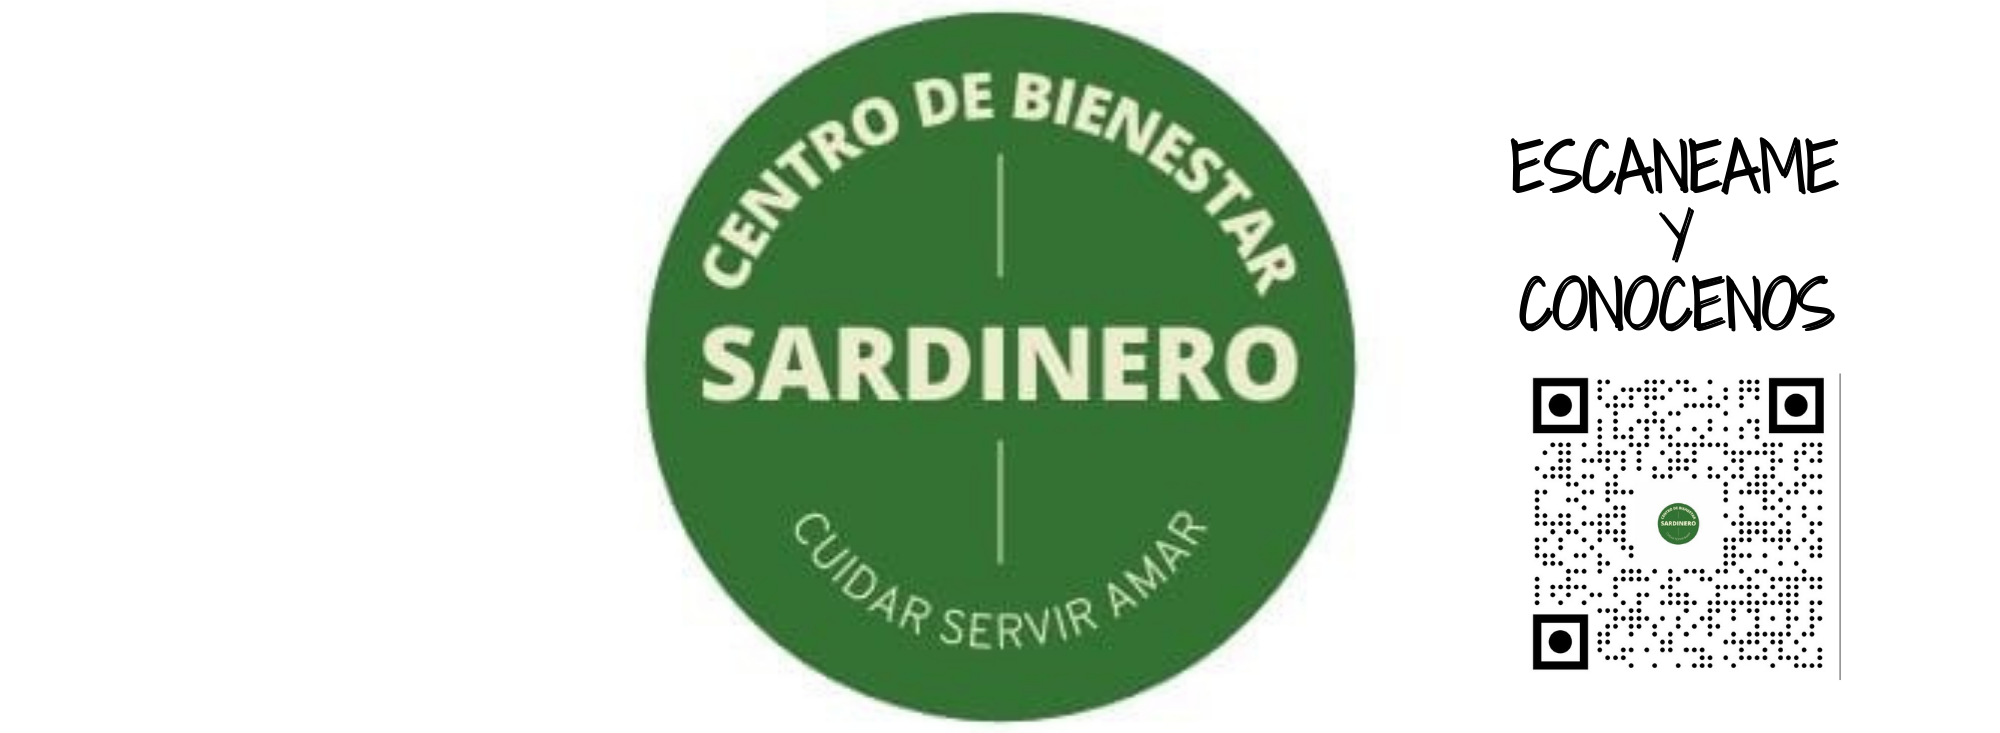 CENTRO DE BIENESTAR SARDINERO